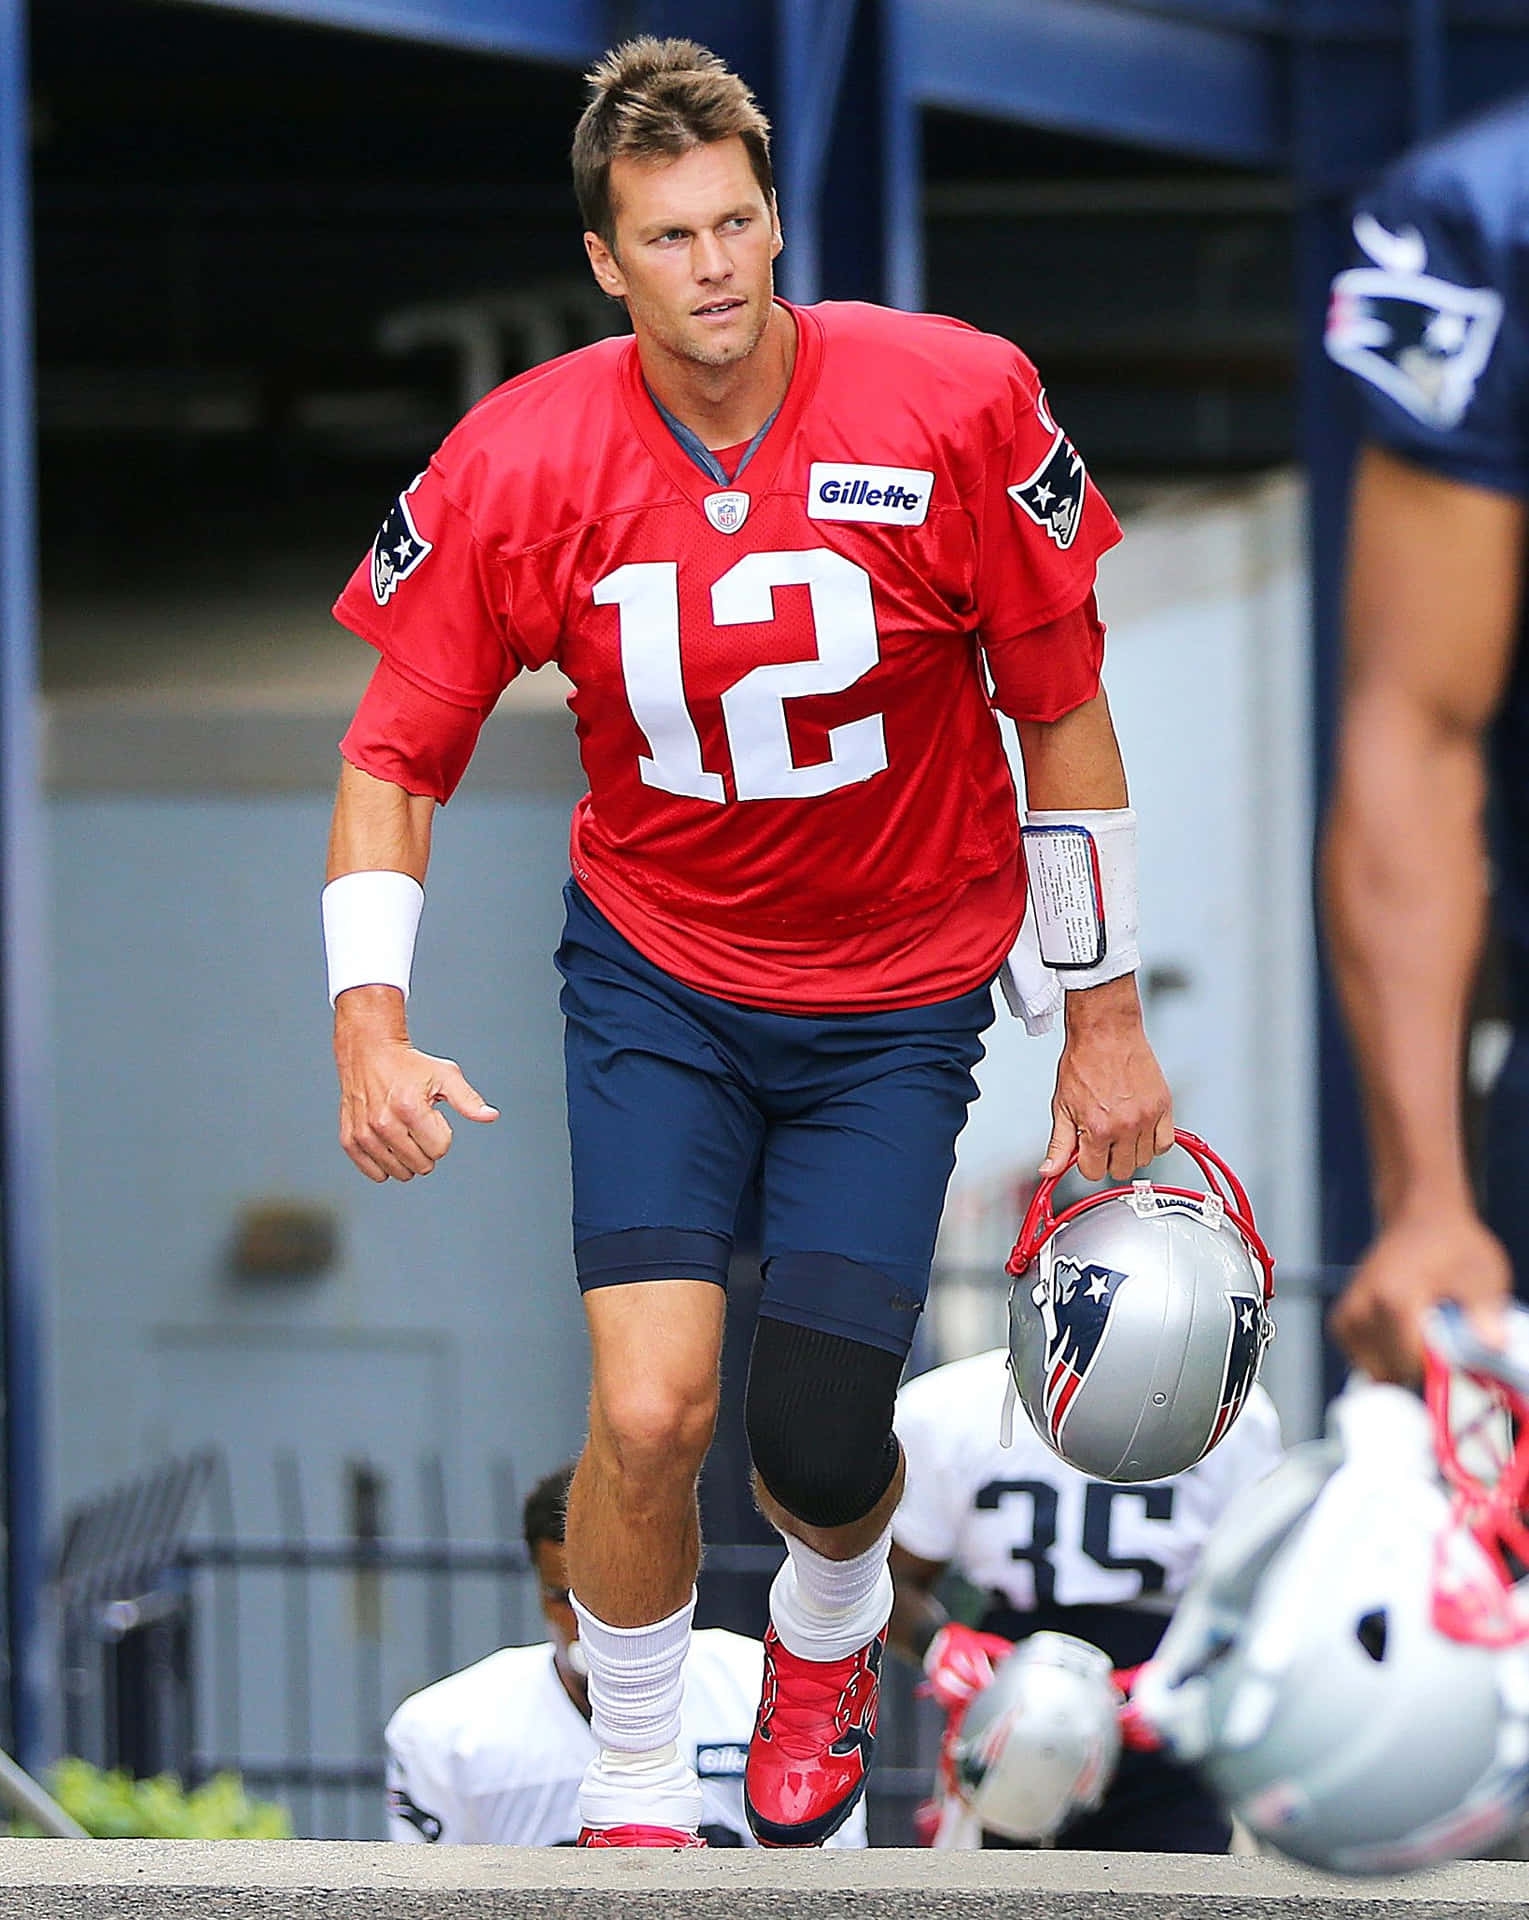 Tom Brady in full focus.